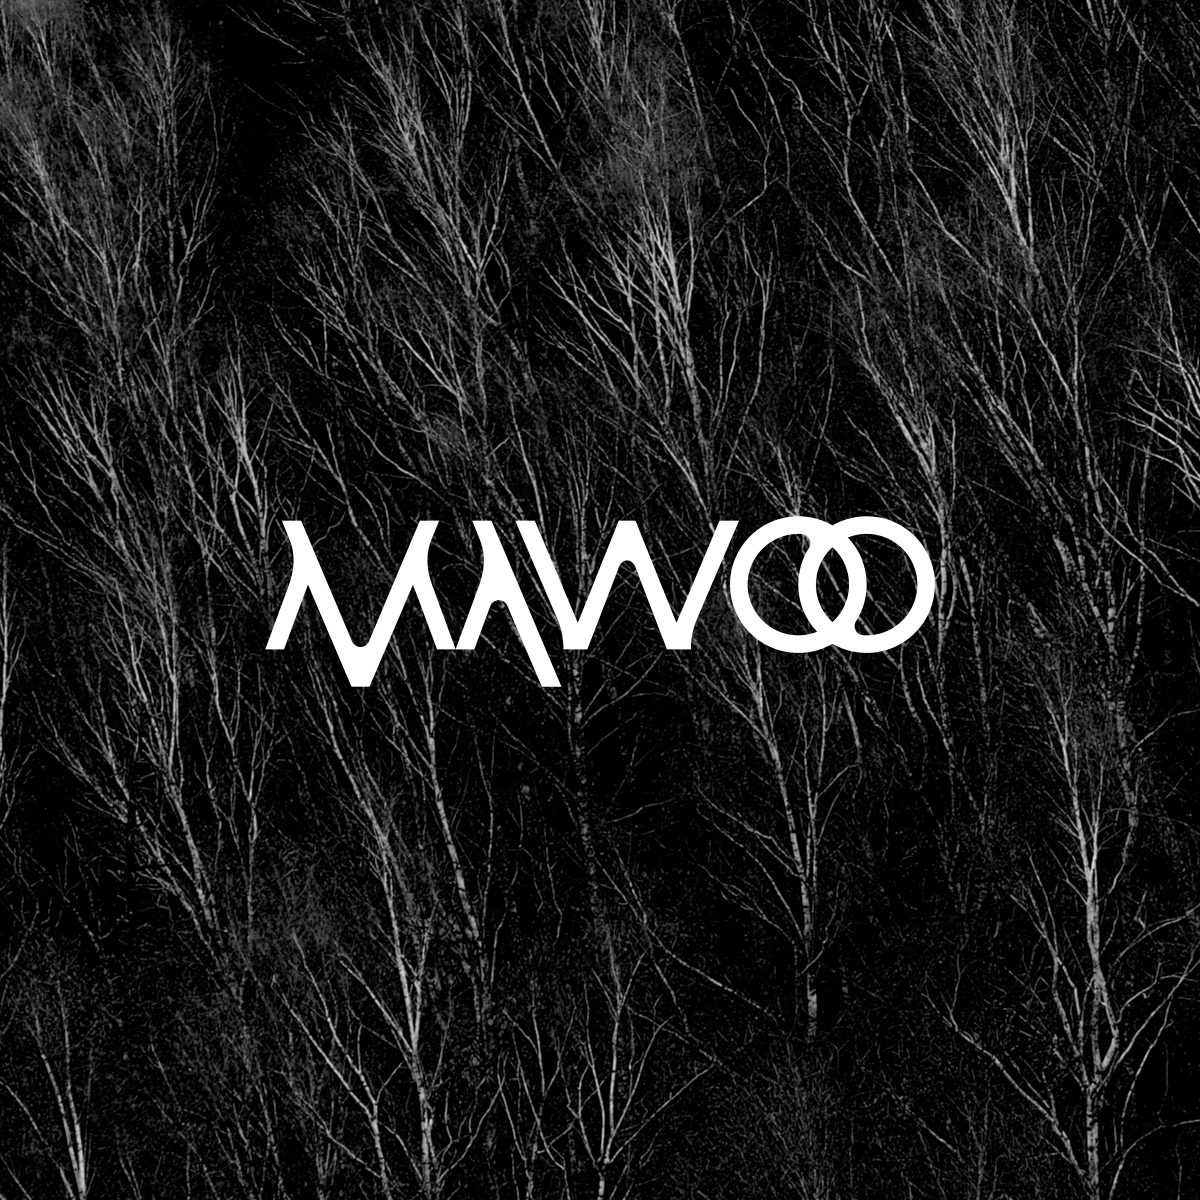 mawoo_image1